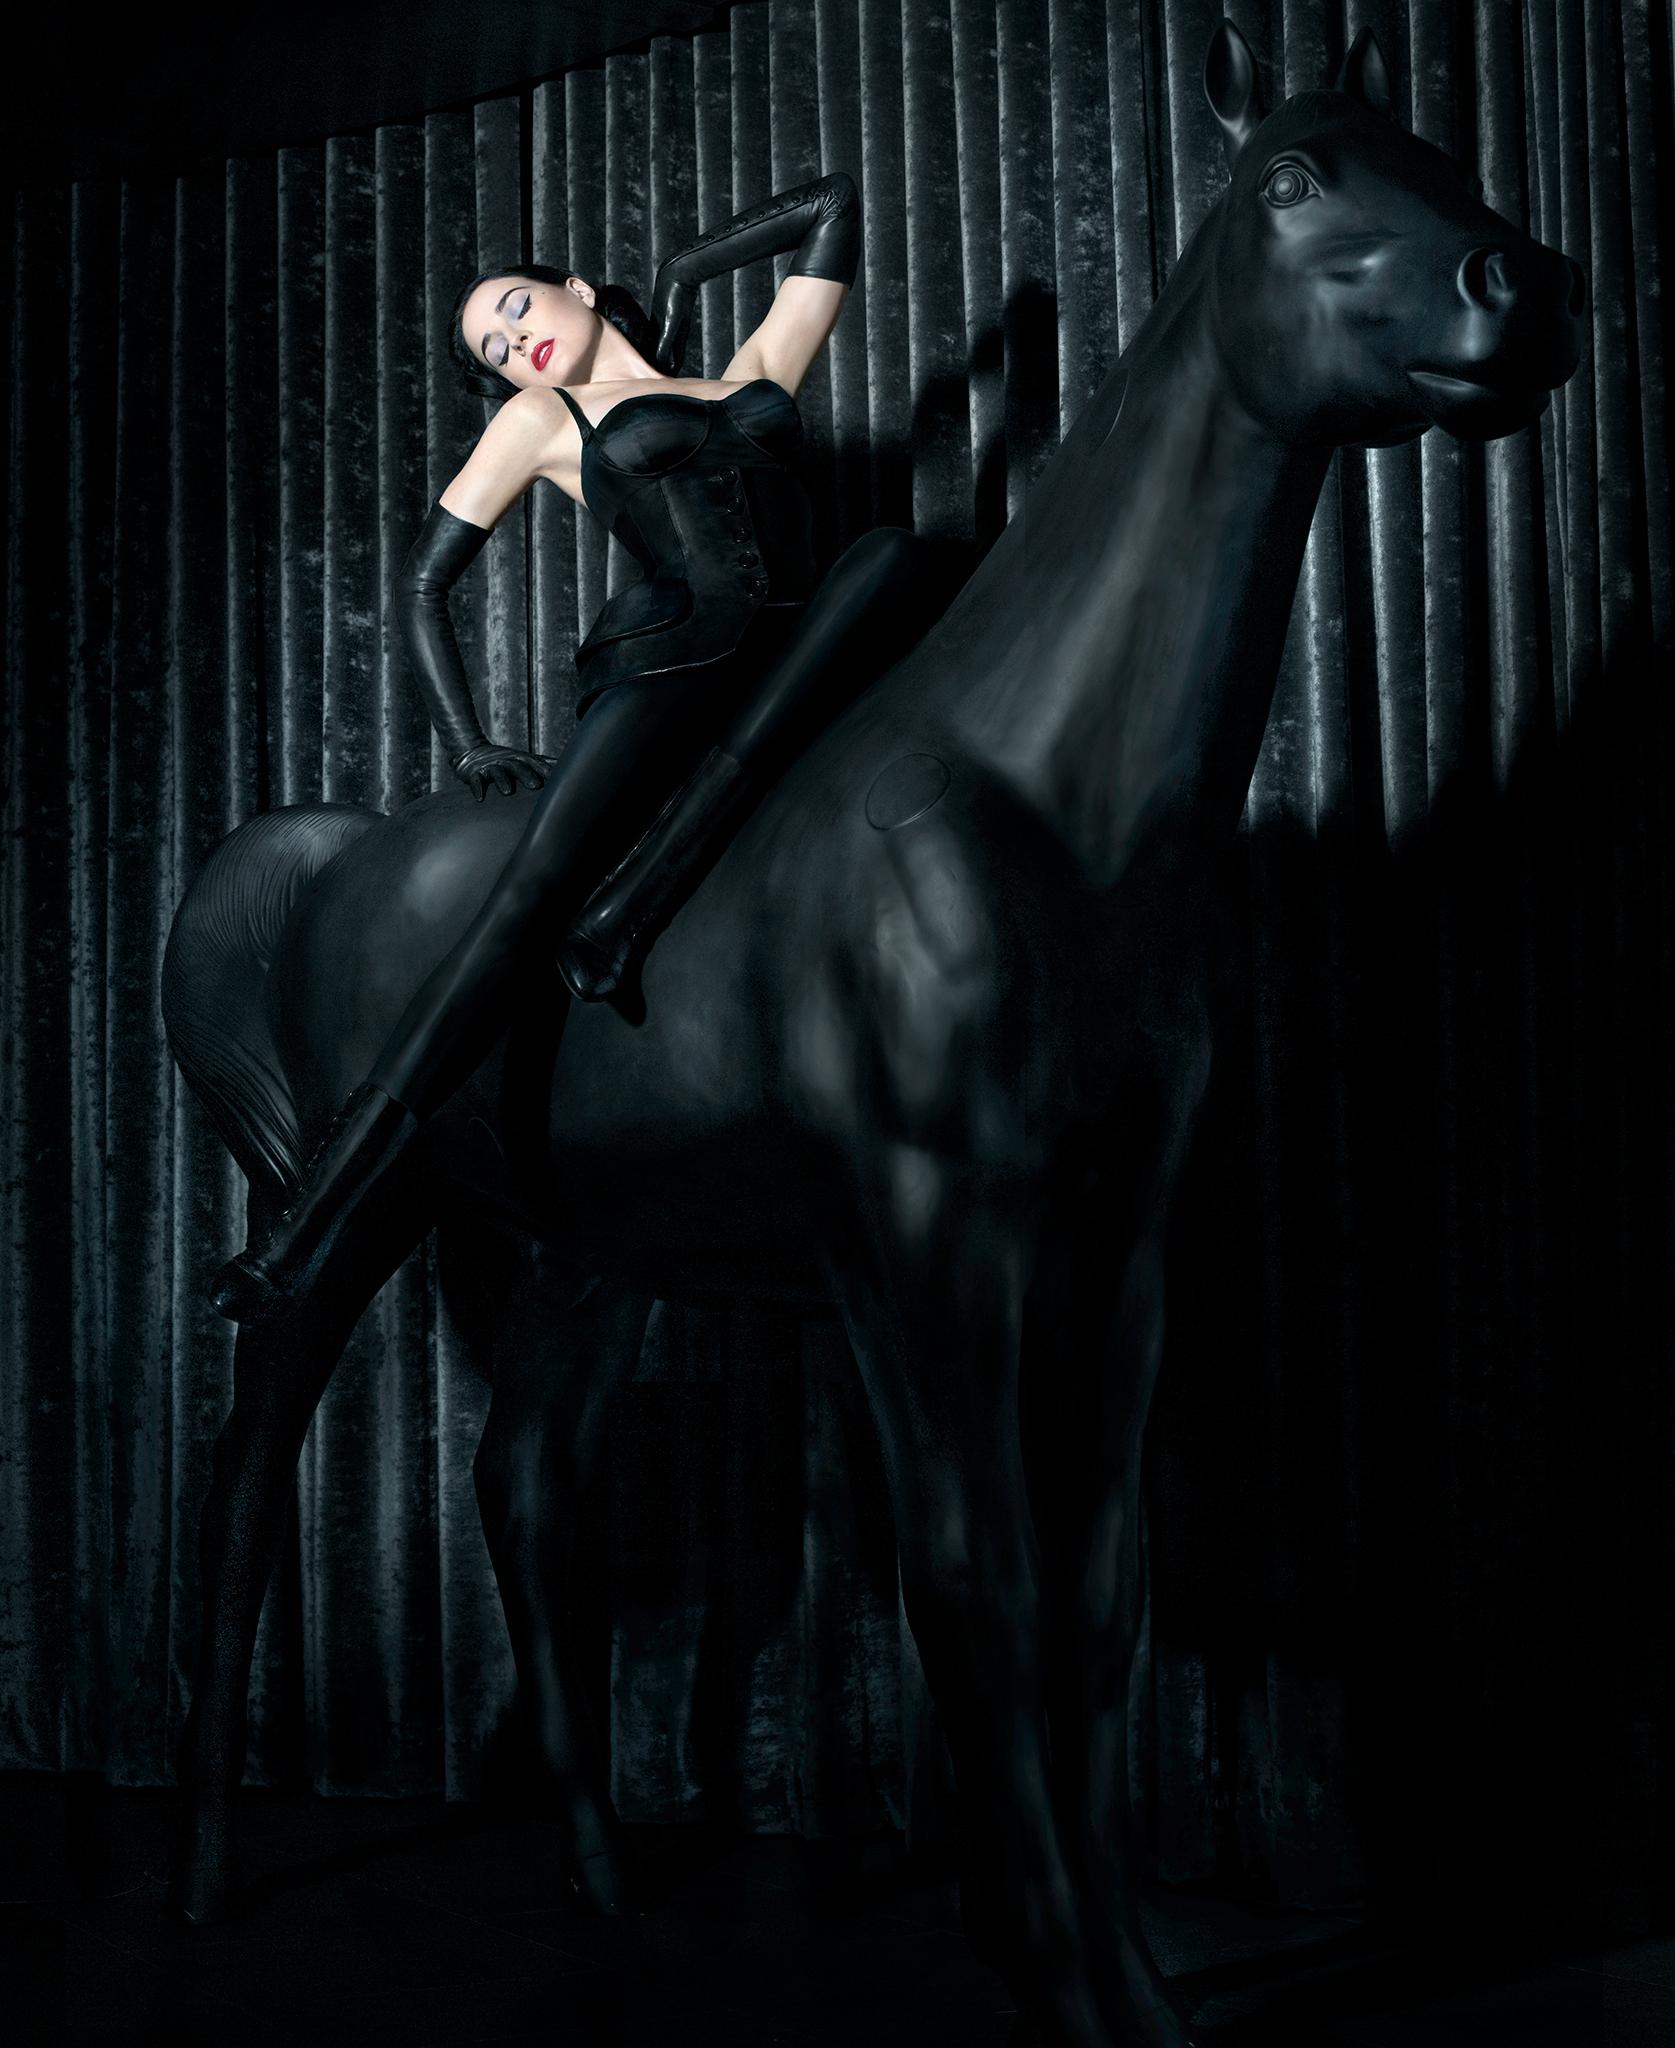 Portrait Photograph Markus Klinko - Dita - Horses 2 - Lt Ed of 12 - peut être expédié roulé ou encadré